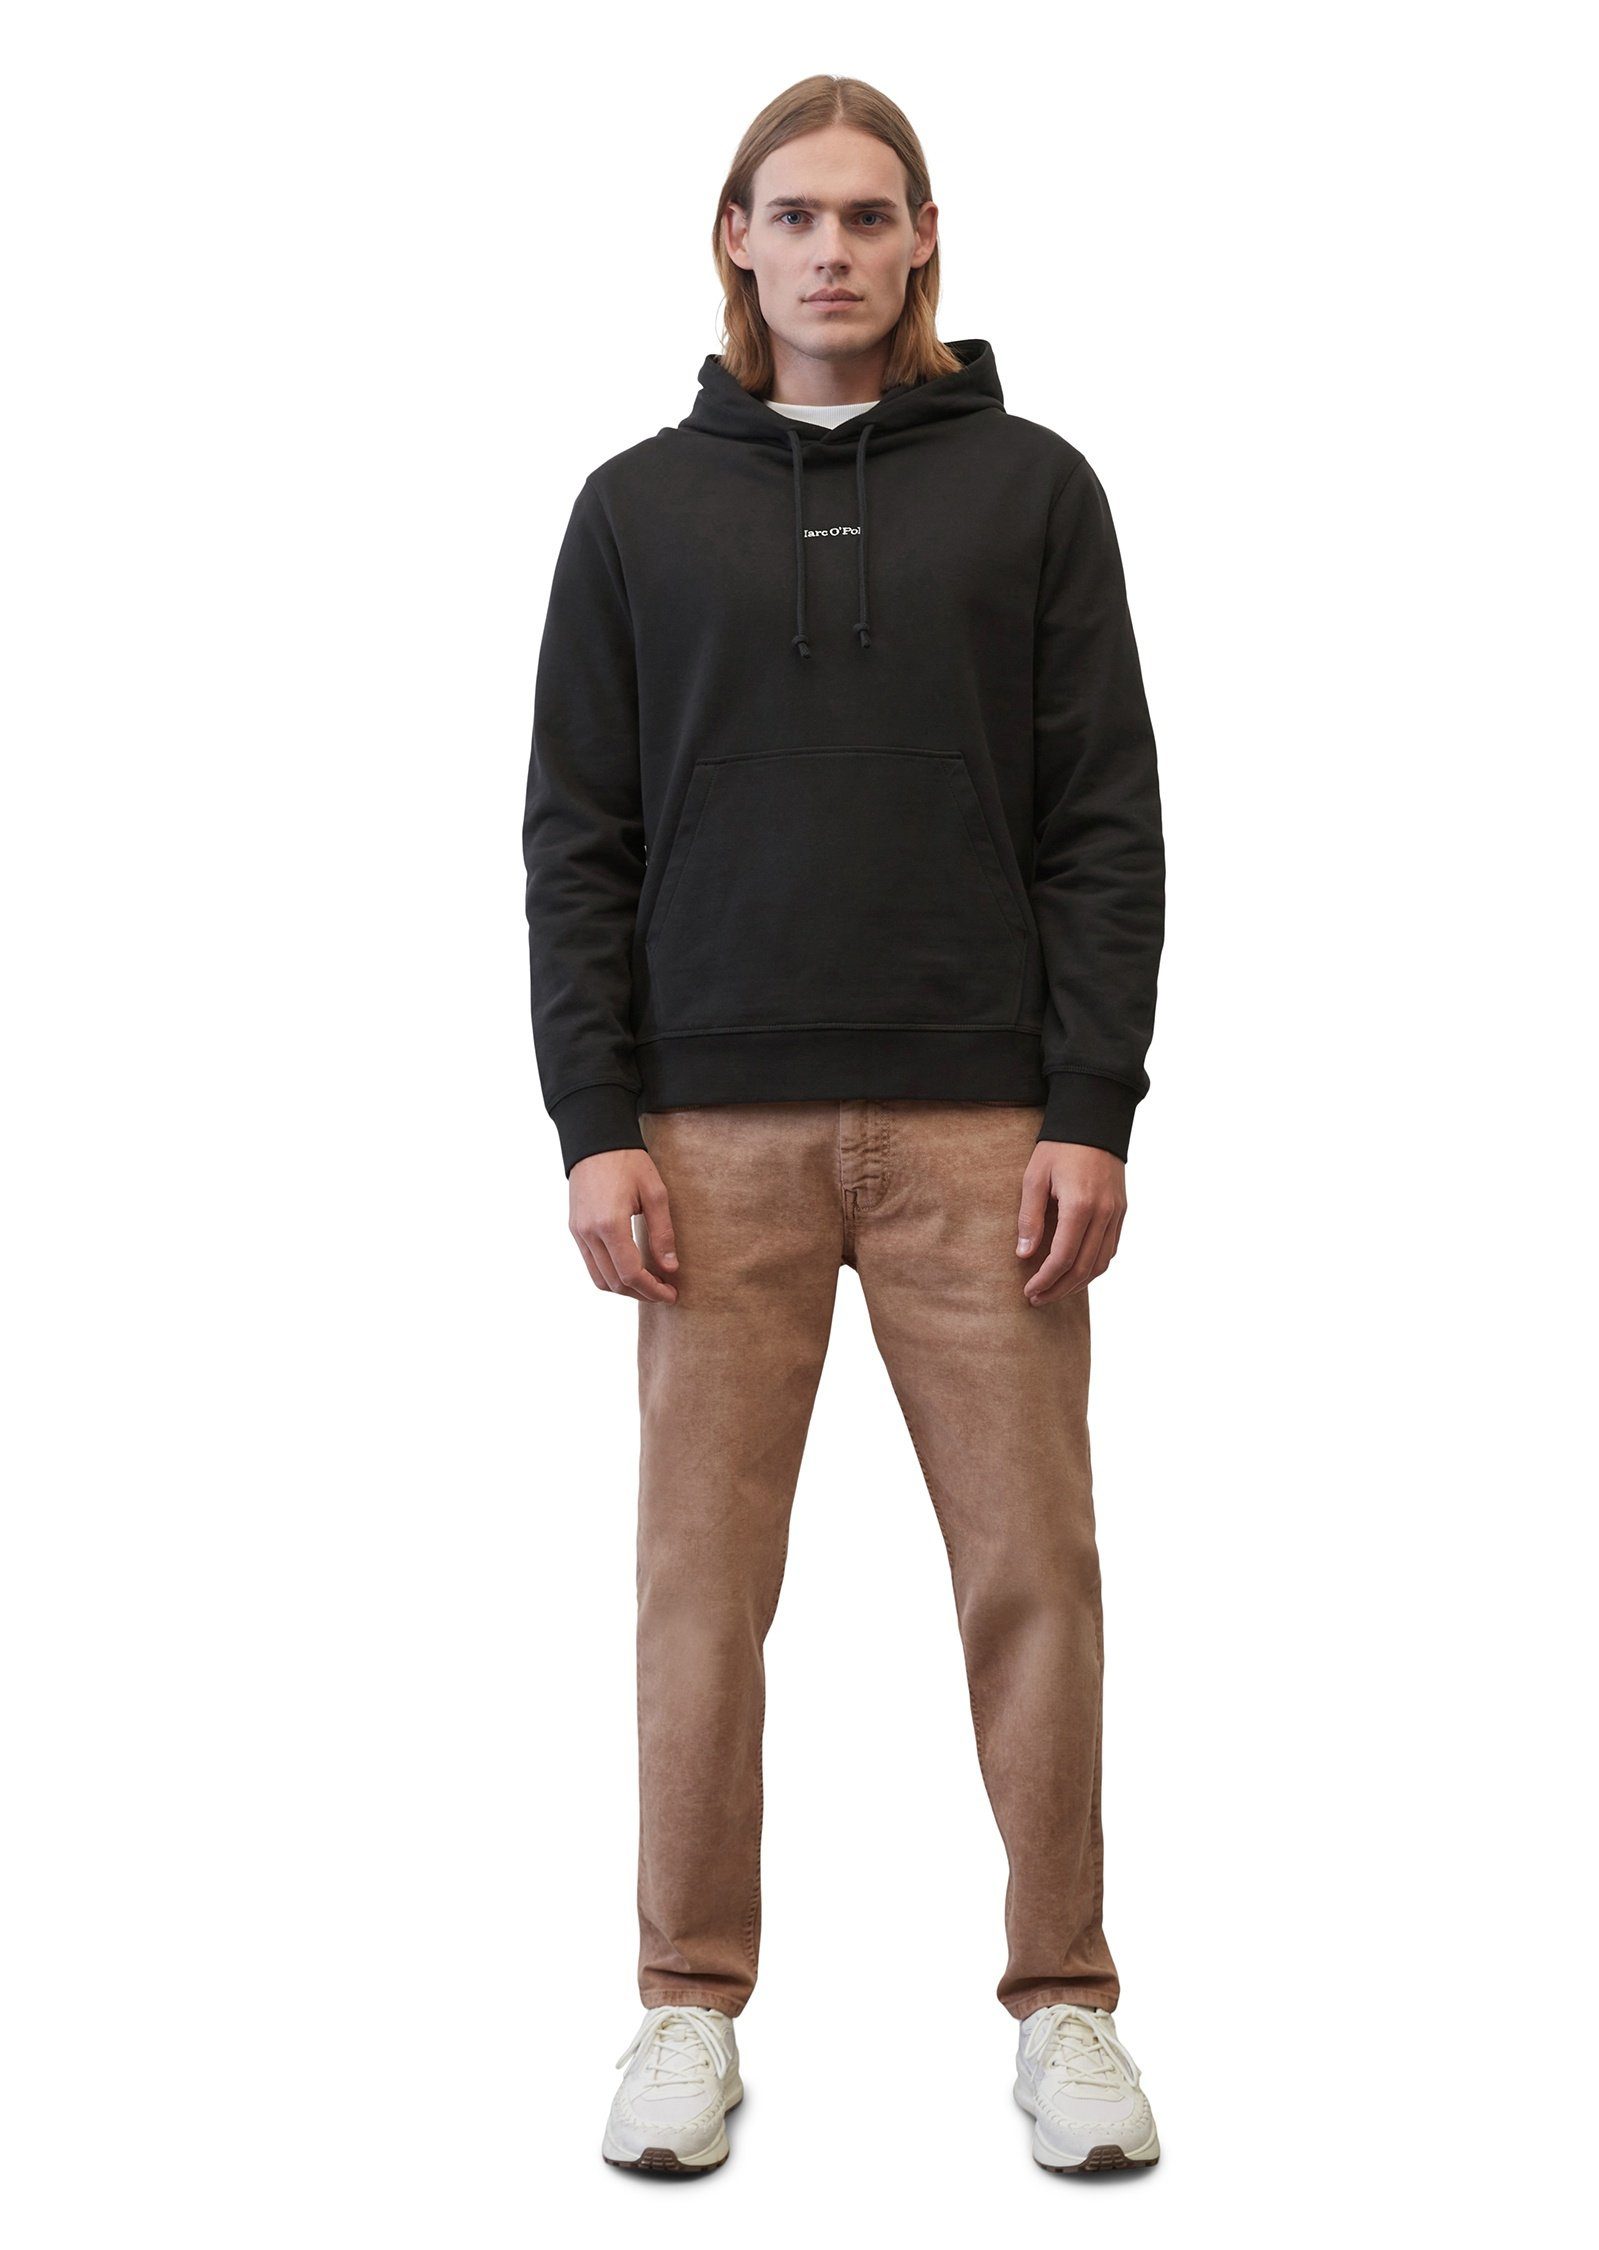 Marc O'Polo Sweatshirt aus reiner schwarz Bio-Baumwolle